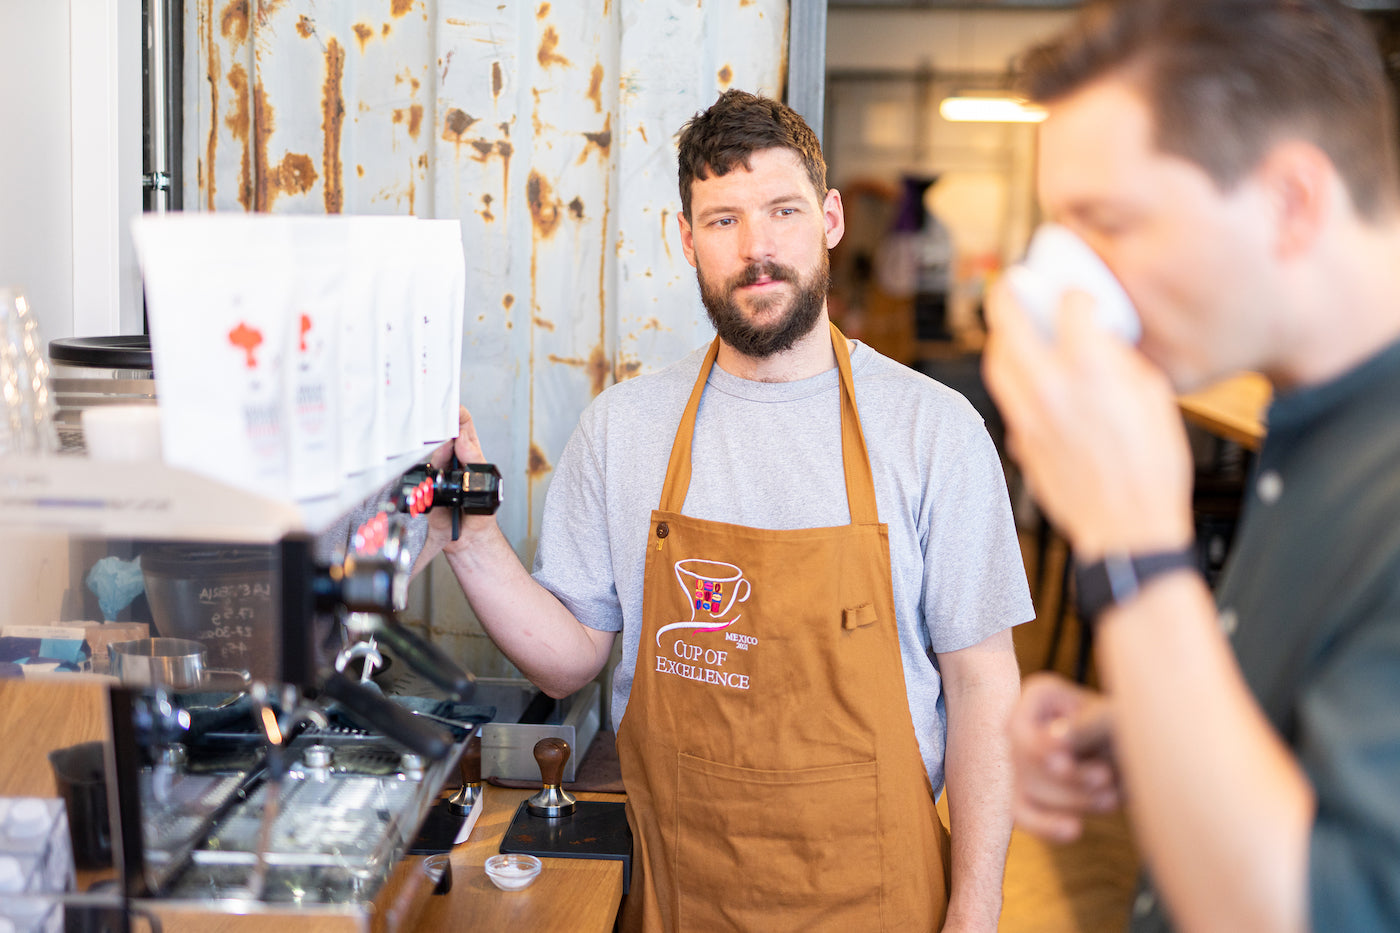 Wir rösten für dich - einem Cupping finden wir gemeinsam heraus, wie du deinen Kaffee am Liebsten trinkst.